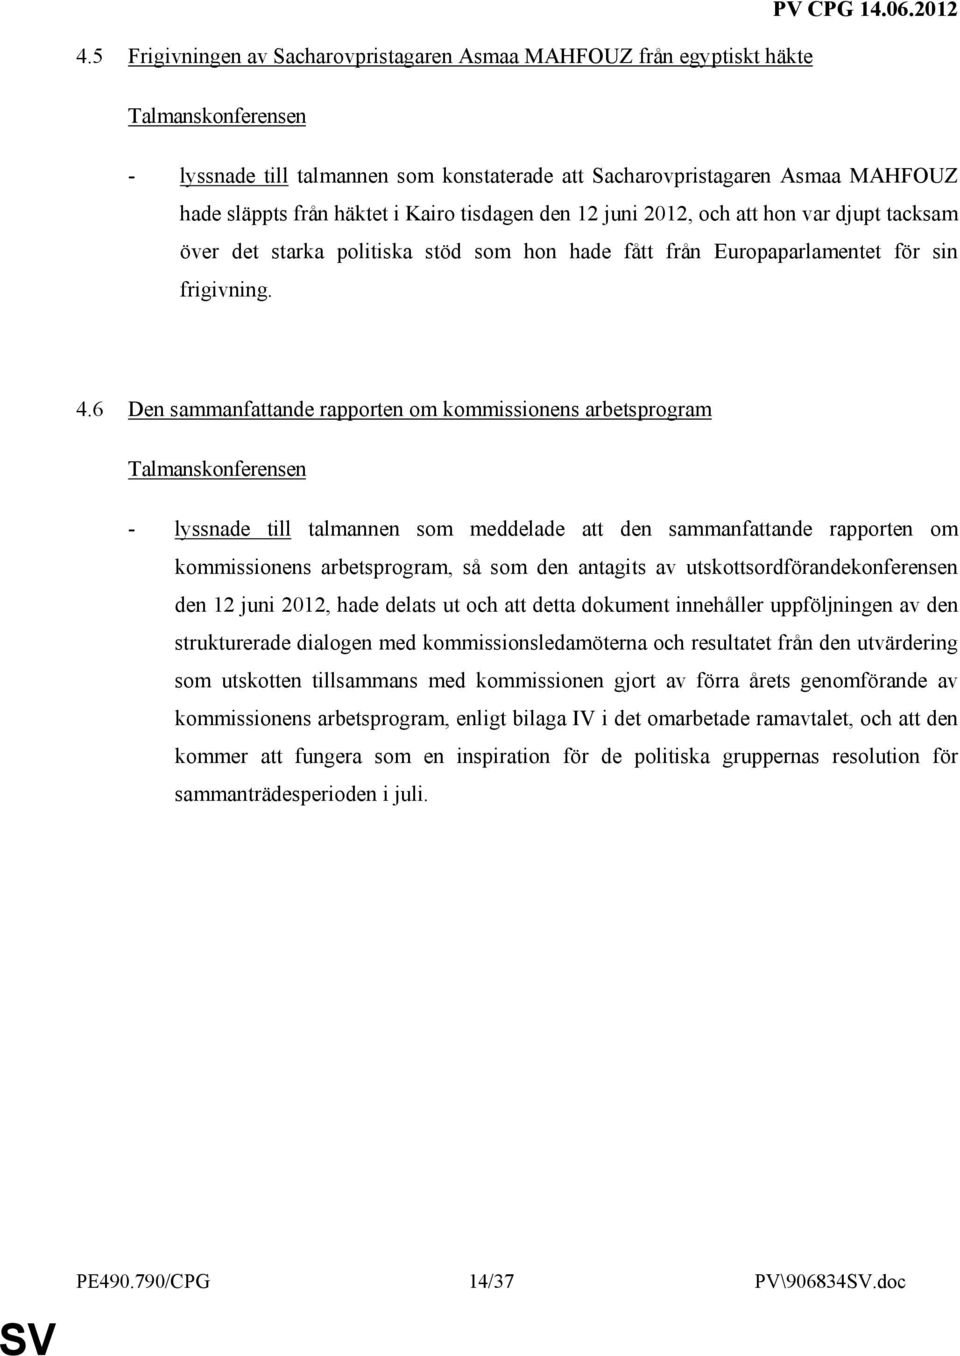 6 Den sammanfattande rapporten om kommissionens arbetsprogram Talmanskonferensen - lyssnade till talmannen som meddelade att den sammanfattande rapporten om kommissionens arbetsprogram, så som den